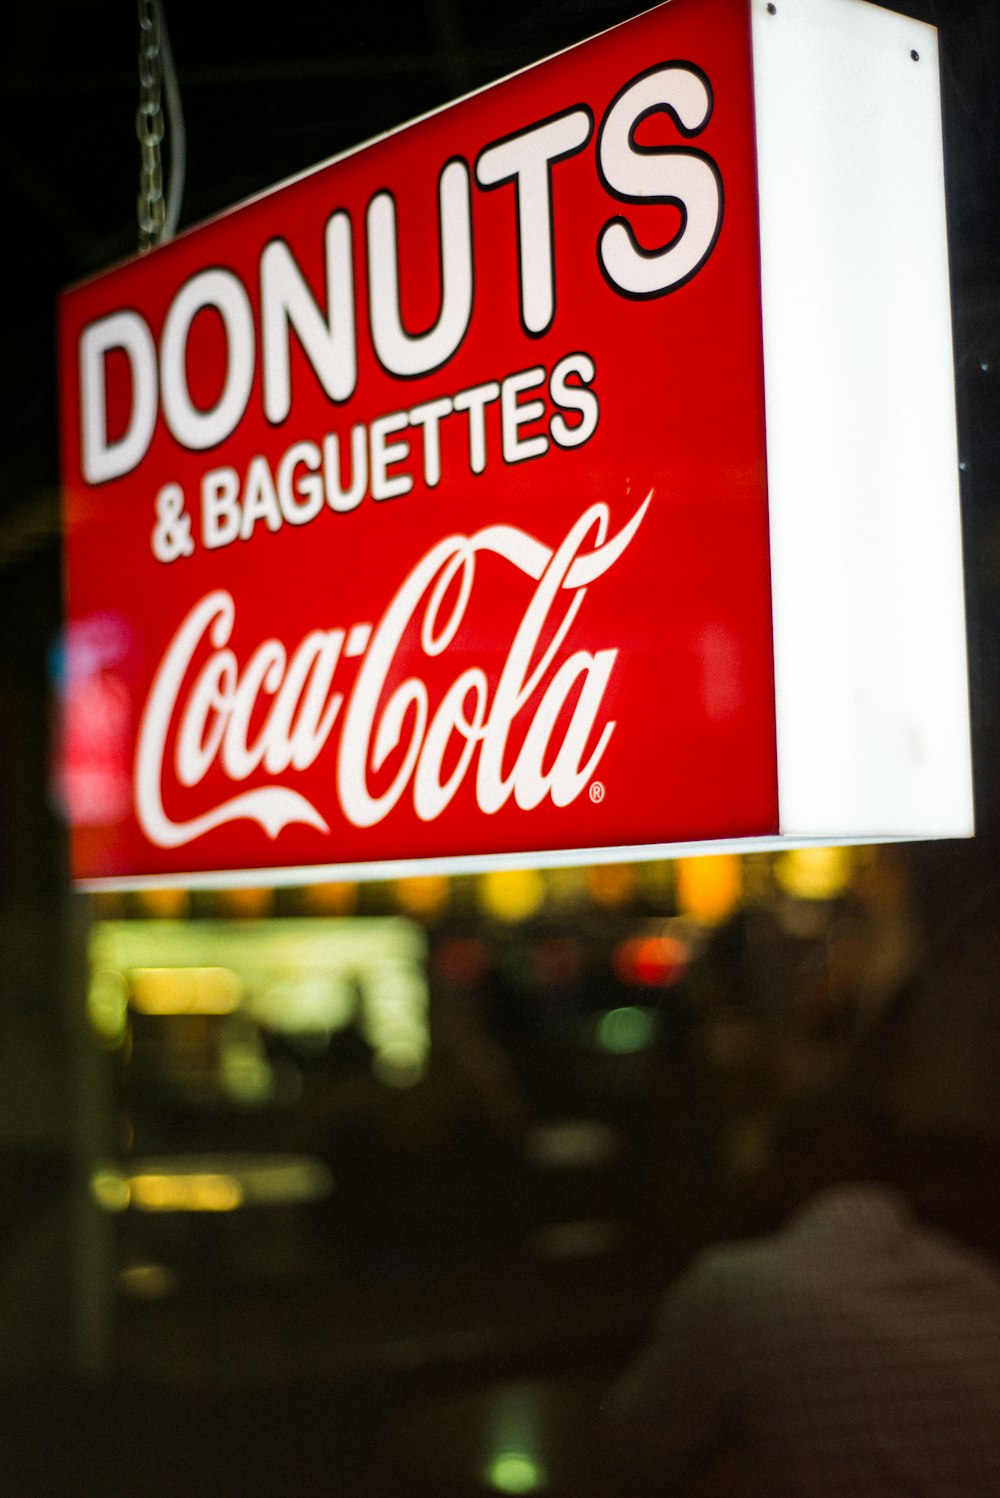 fotografia próxima de Donuts & Baguettes Coca-Cola sinalização